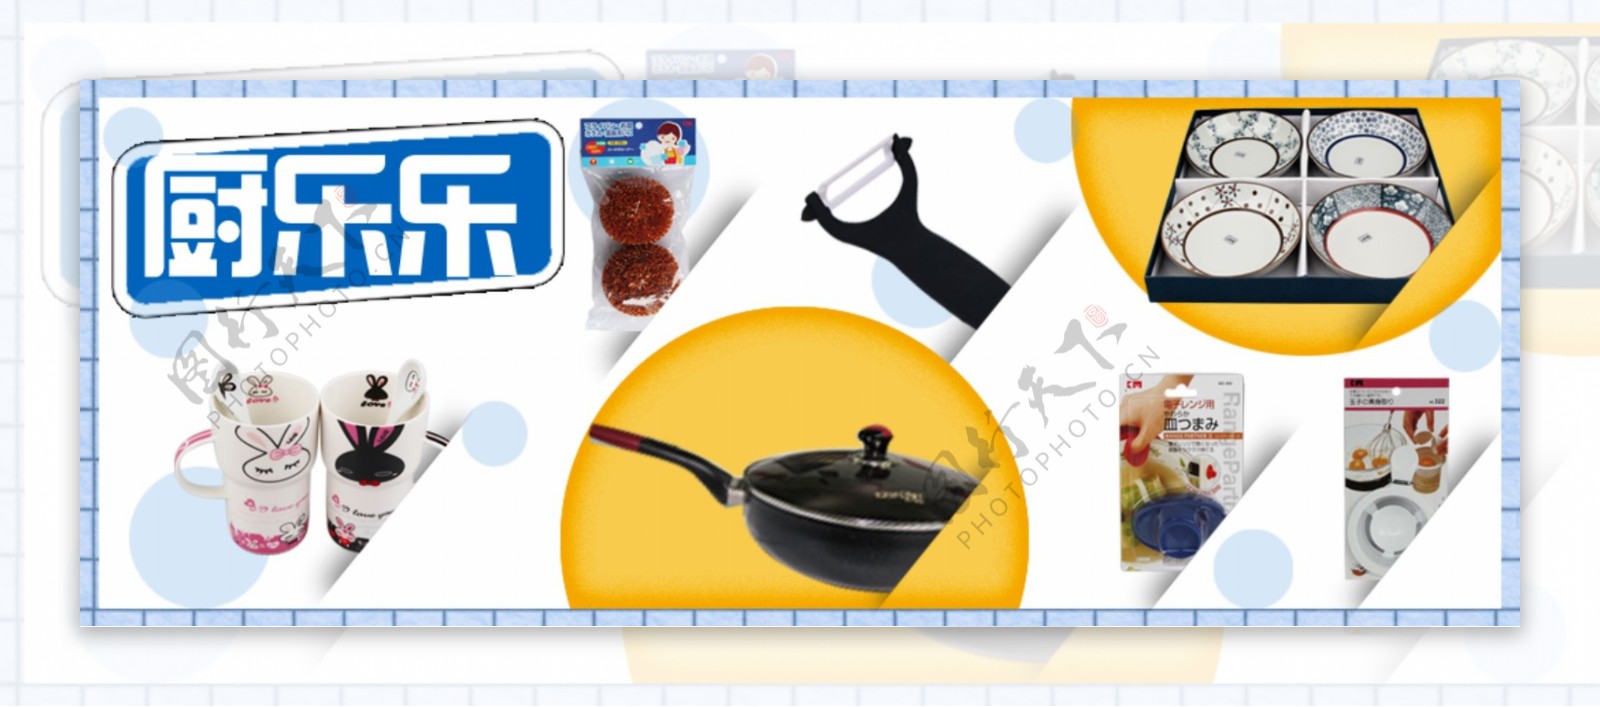 厨房用品网站营销活动广告图片